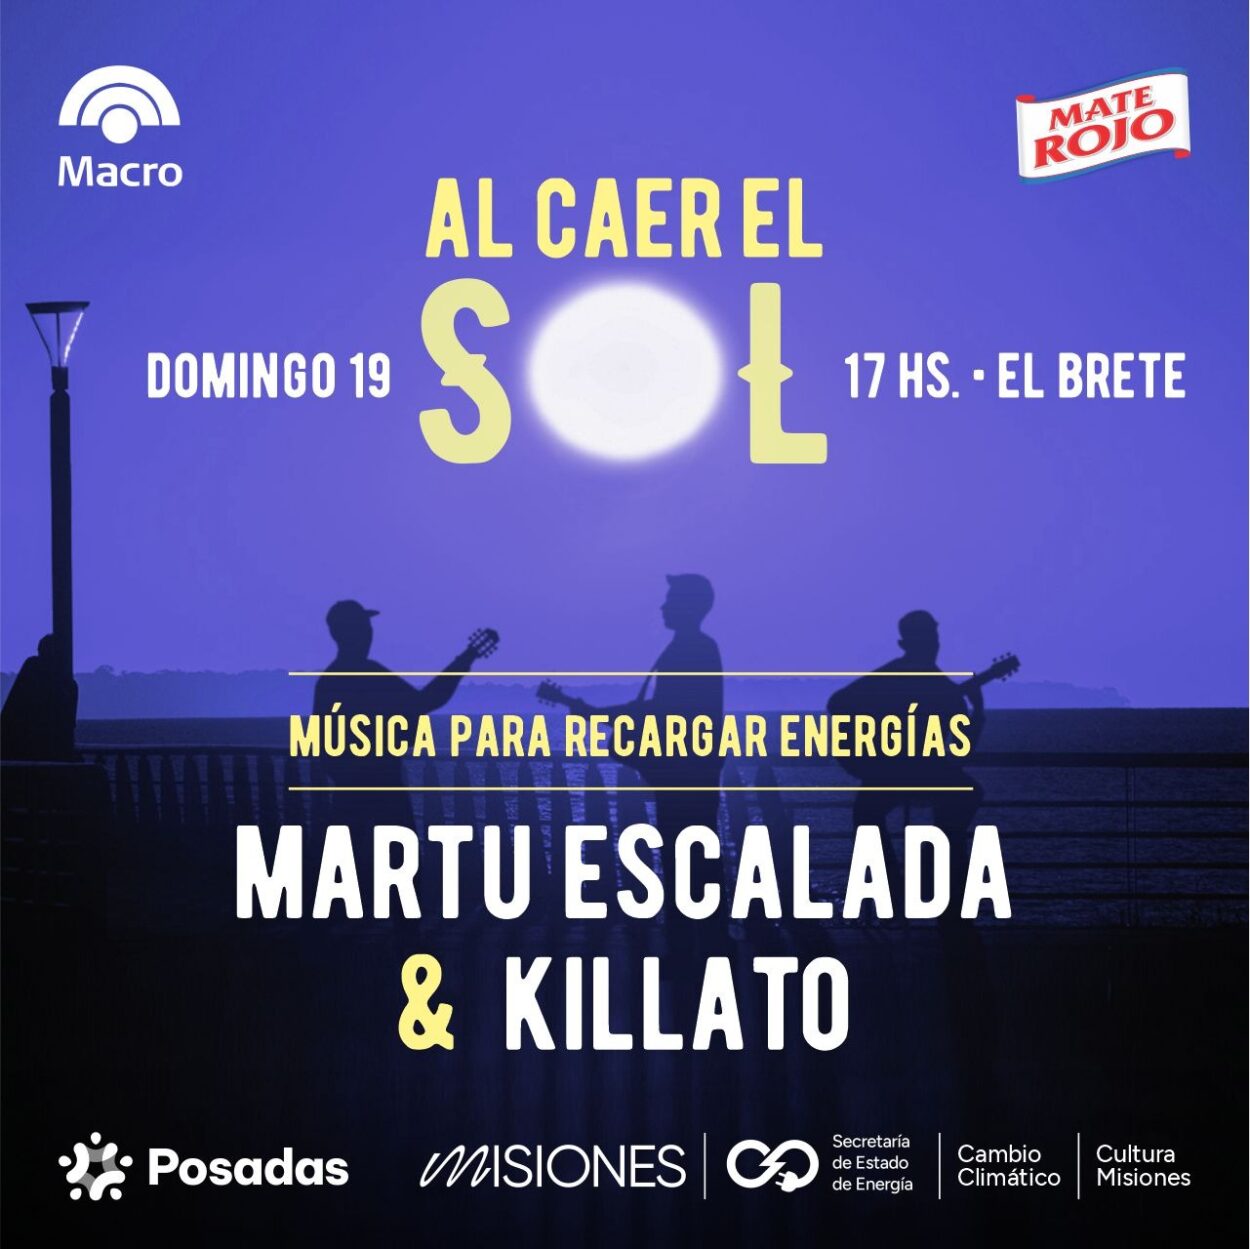 Martu Escalada y Killato: rock y música urbana este domingo “Al caer el sol en El Brete” imagen-9